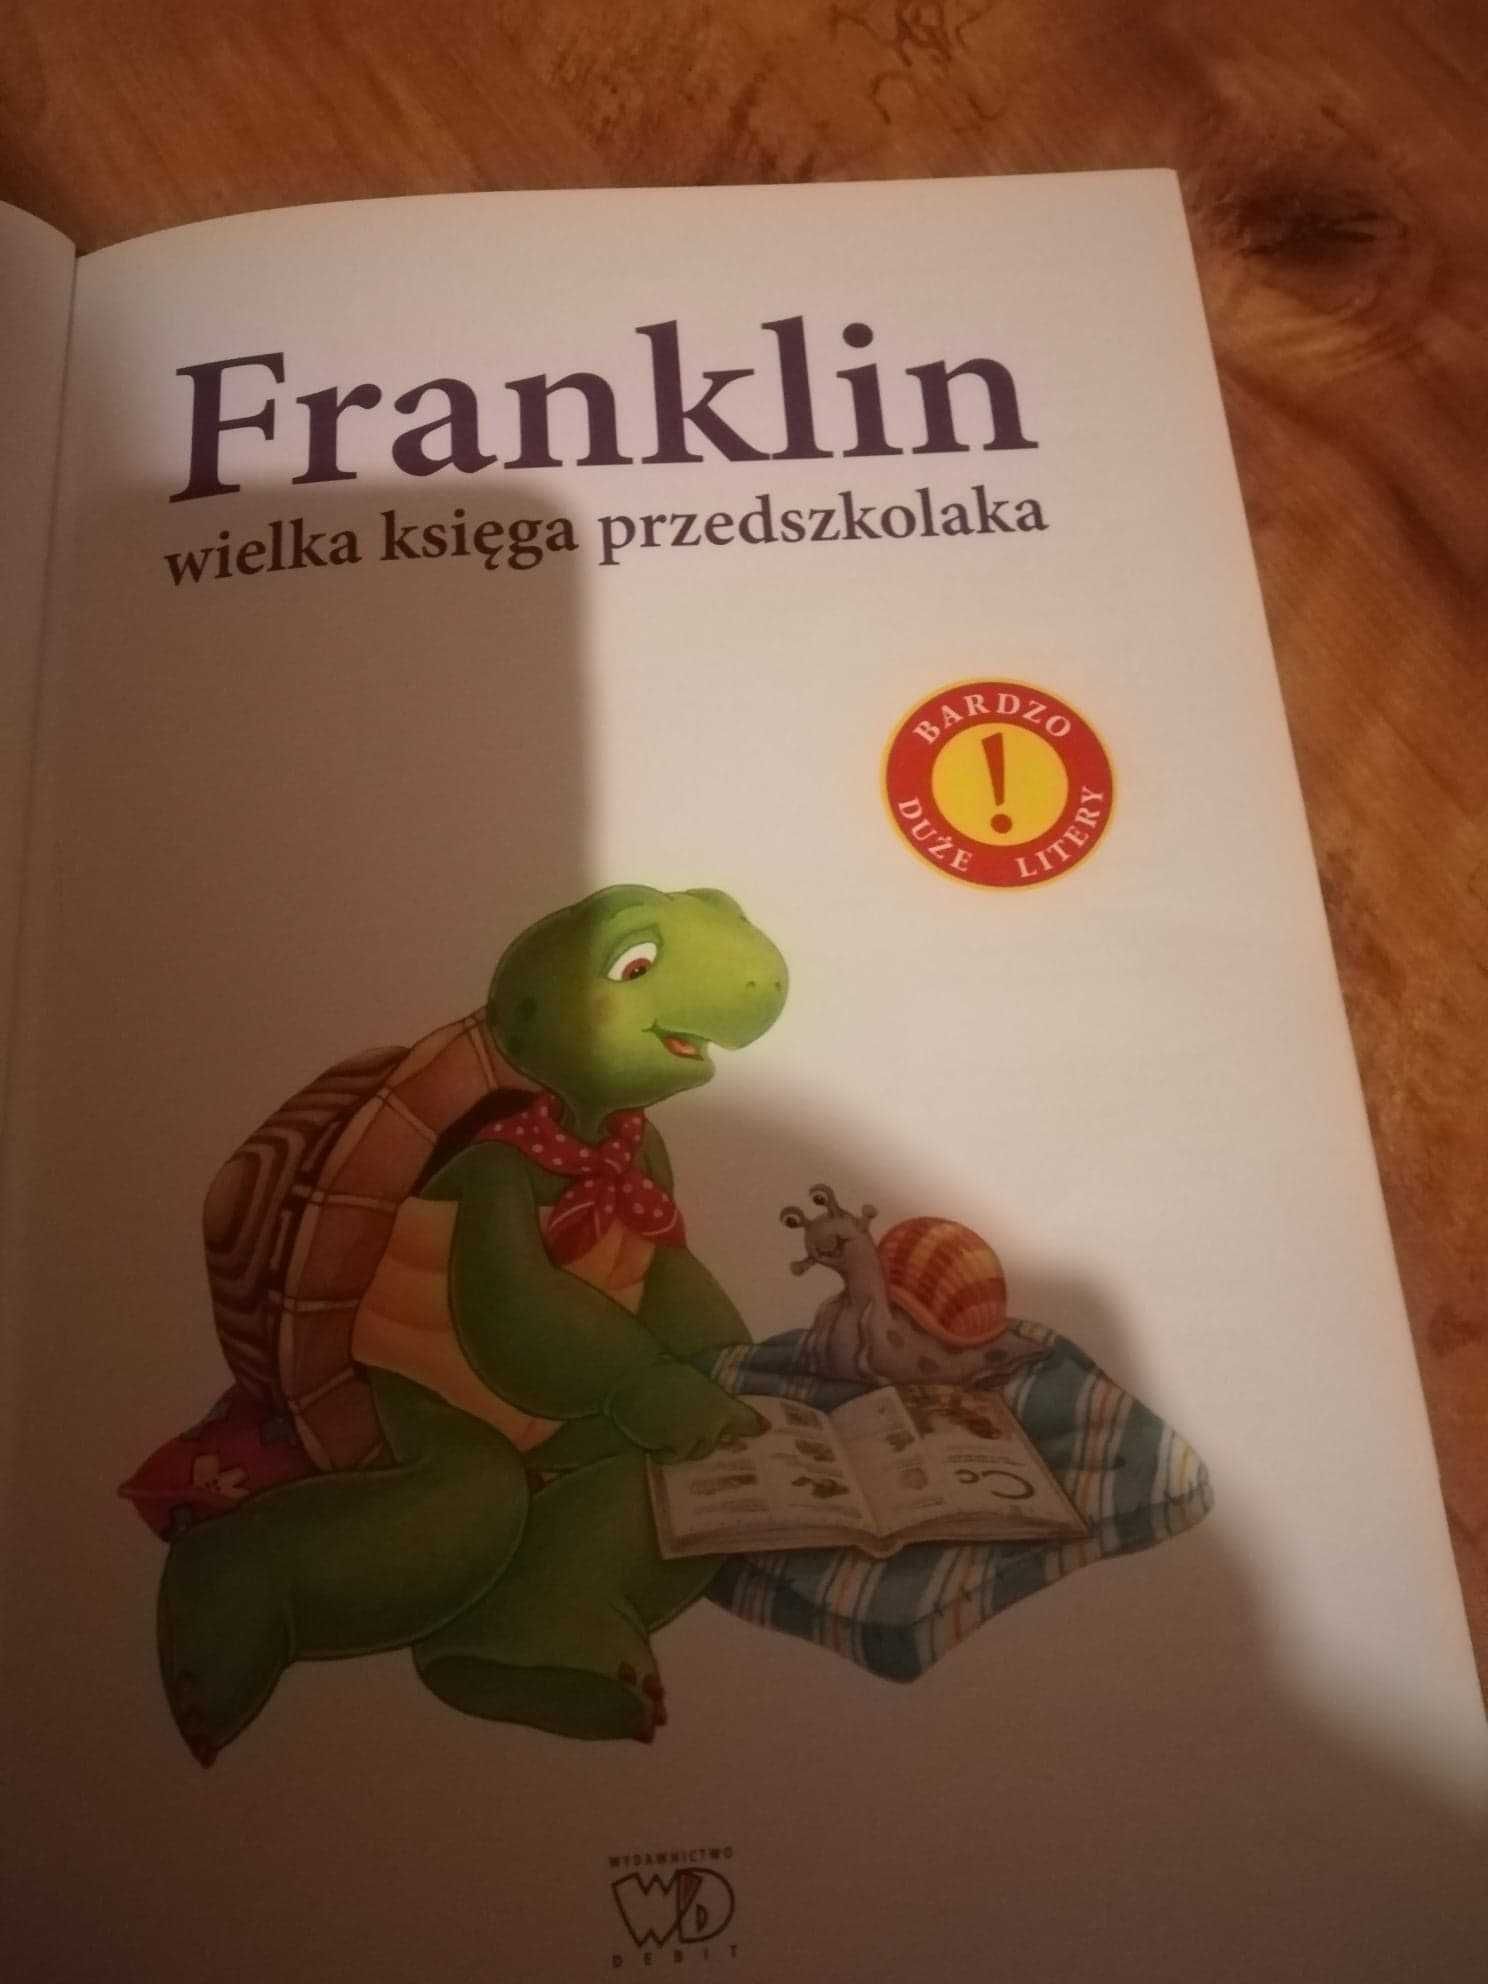 Franklin - wielka księga przedskzolaka